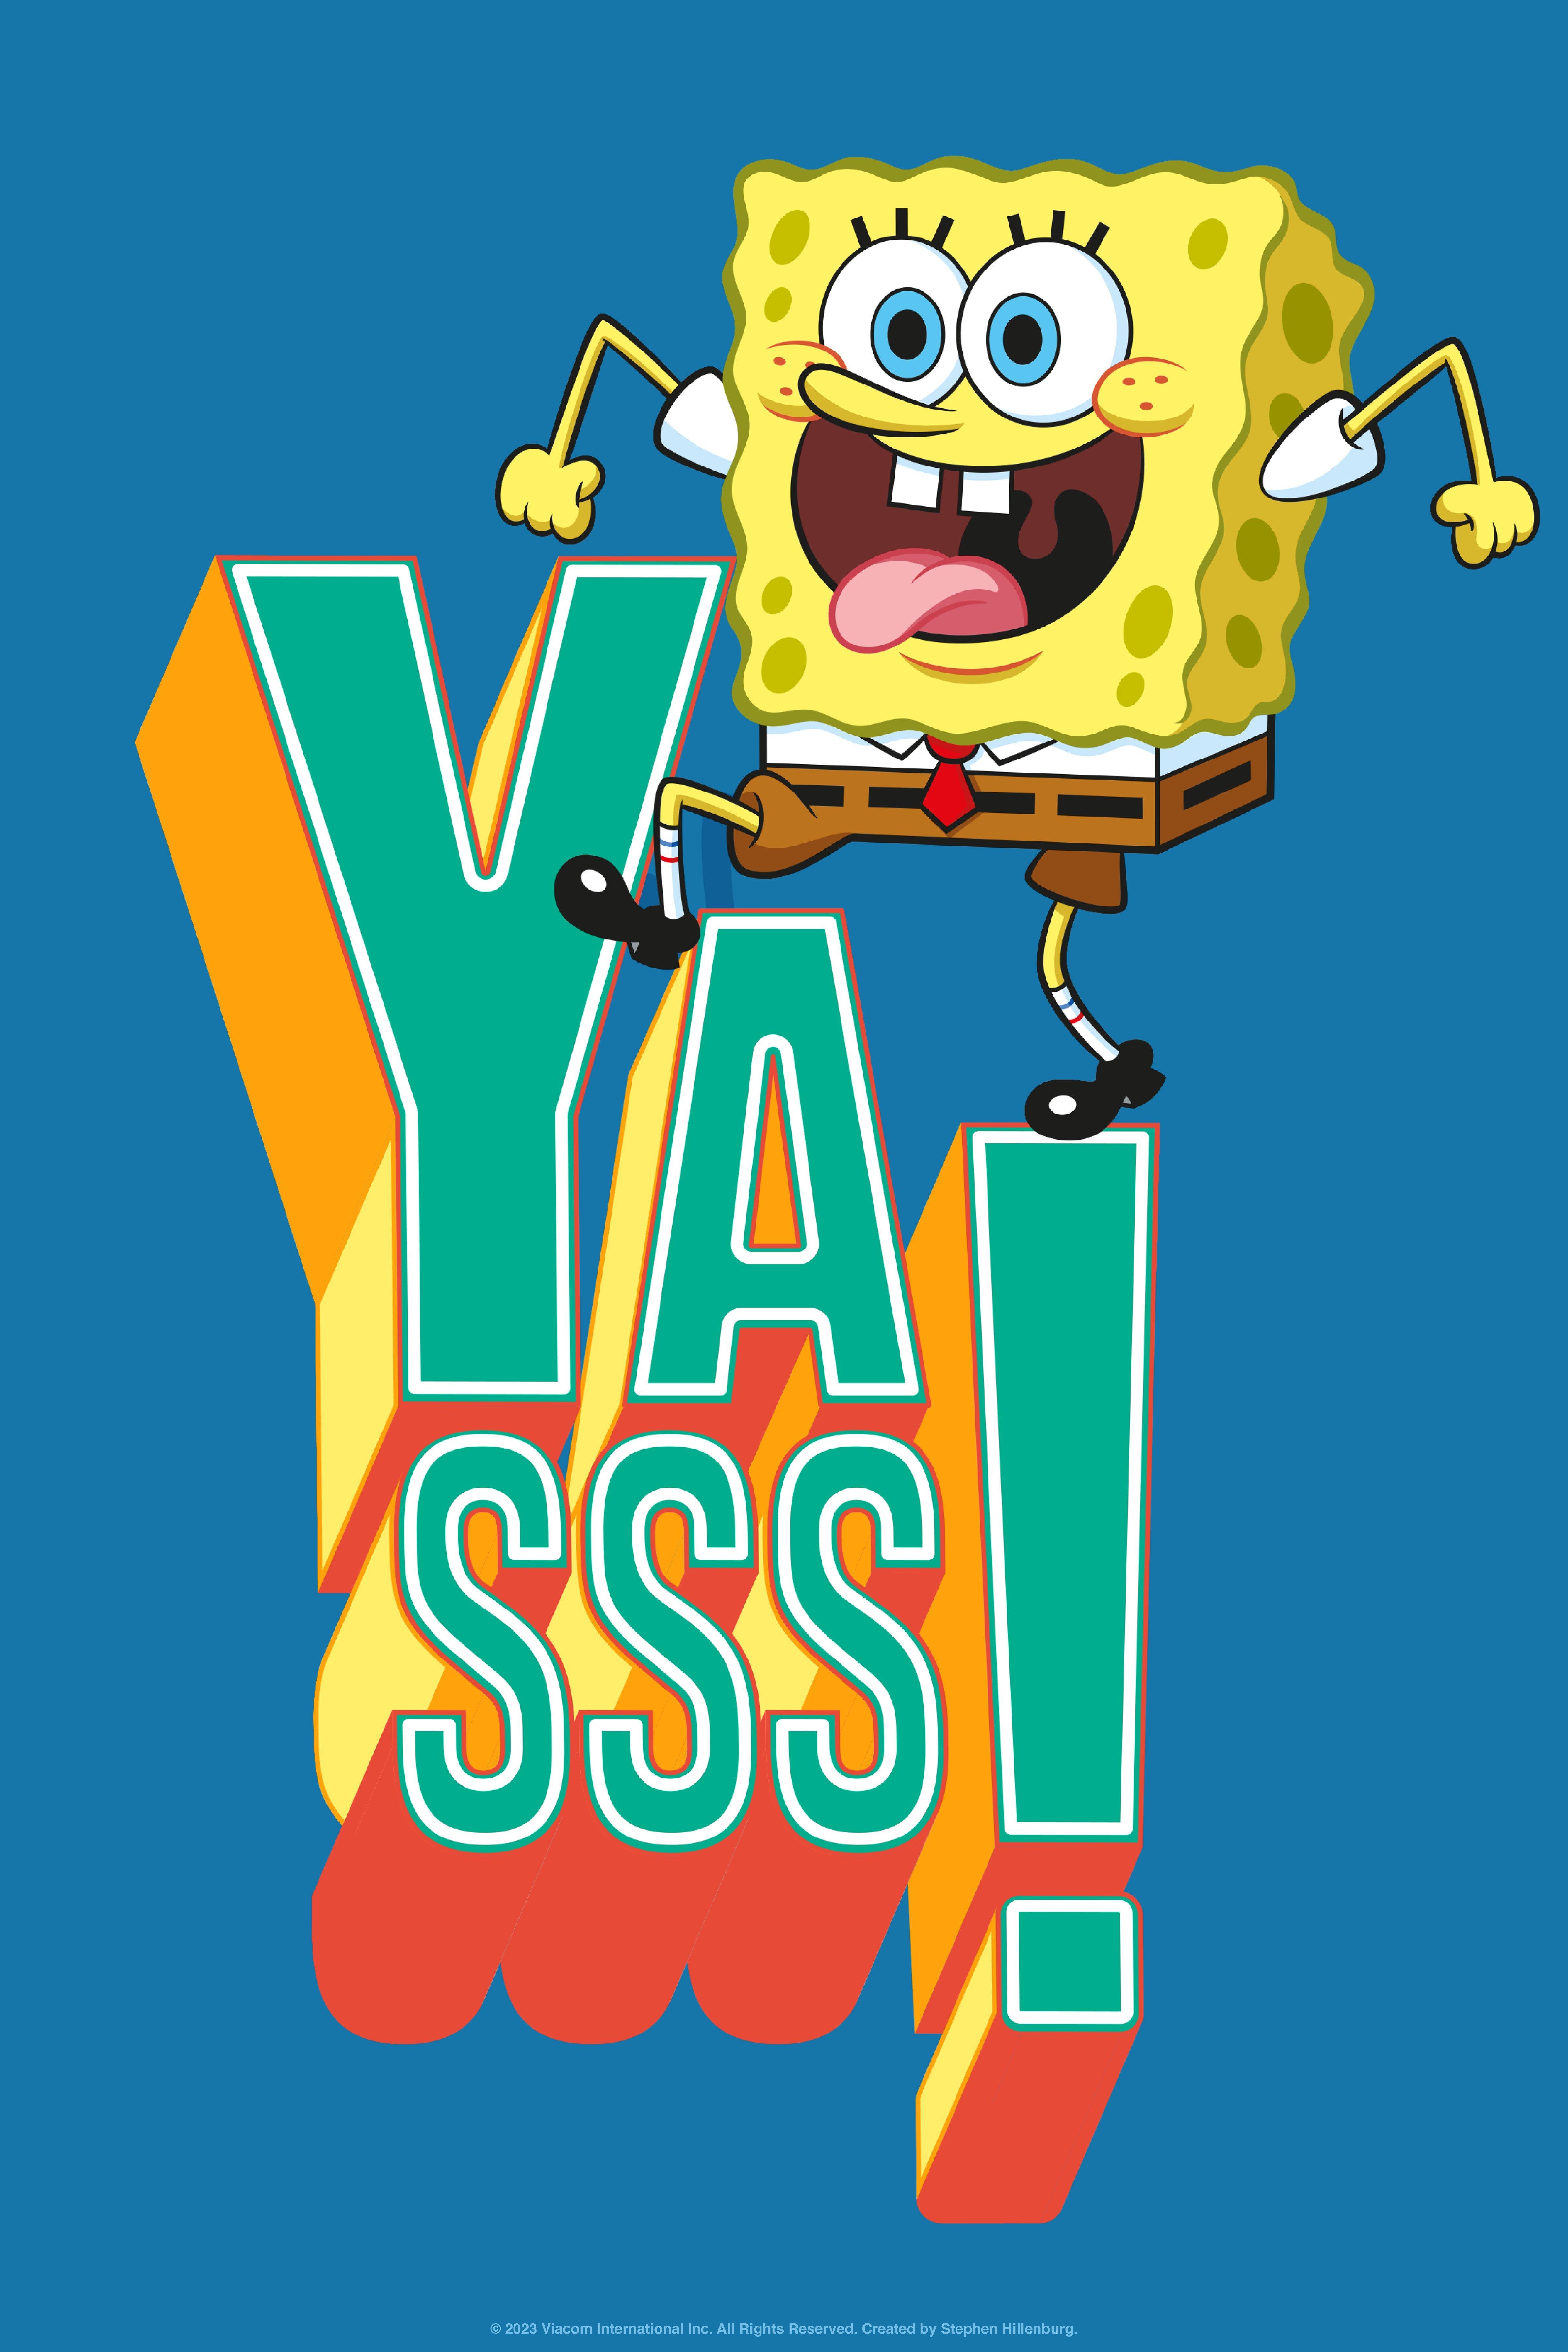 spongebob squarepants poster